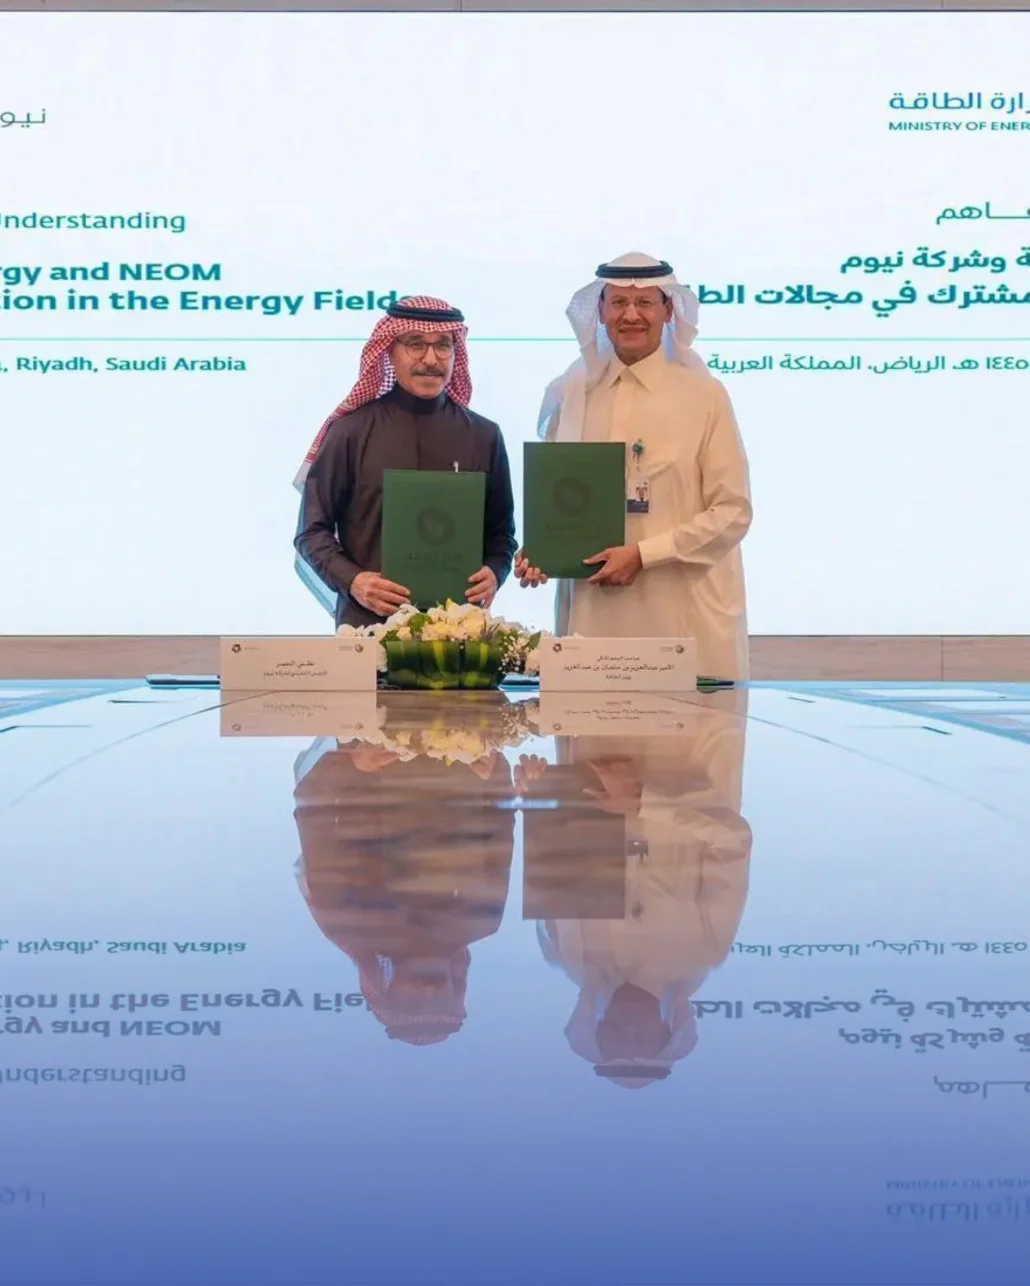 وقّع المذكرة، وزير الطاقة الأمير عبدالعزيز بن سلمان بن عبدالعزيز مع الرئيس التنفيذي لشركة نيوم المهندس نظمي النصر